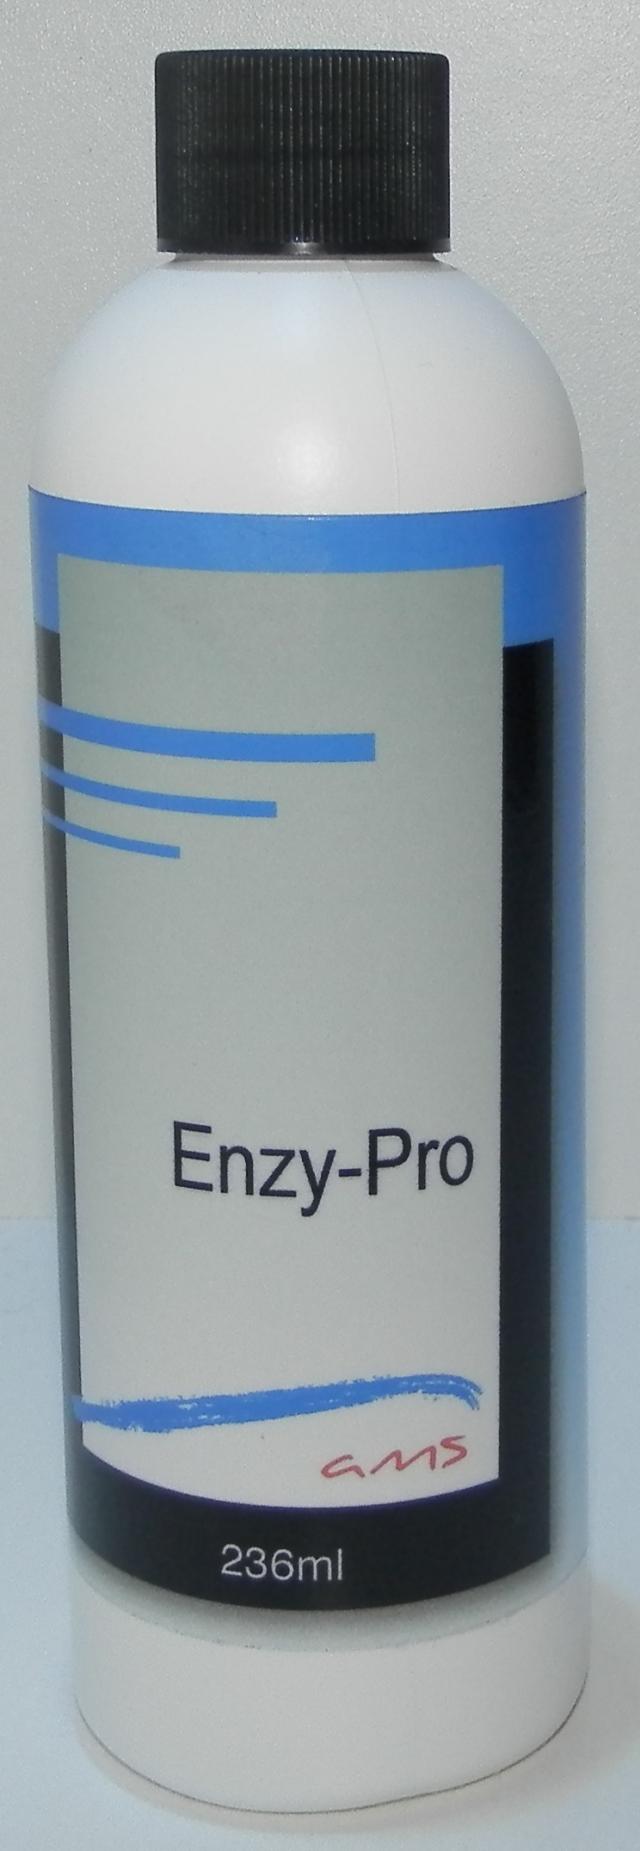 enzy-pro 236ml